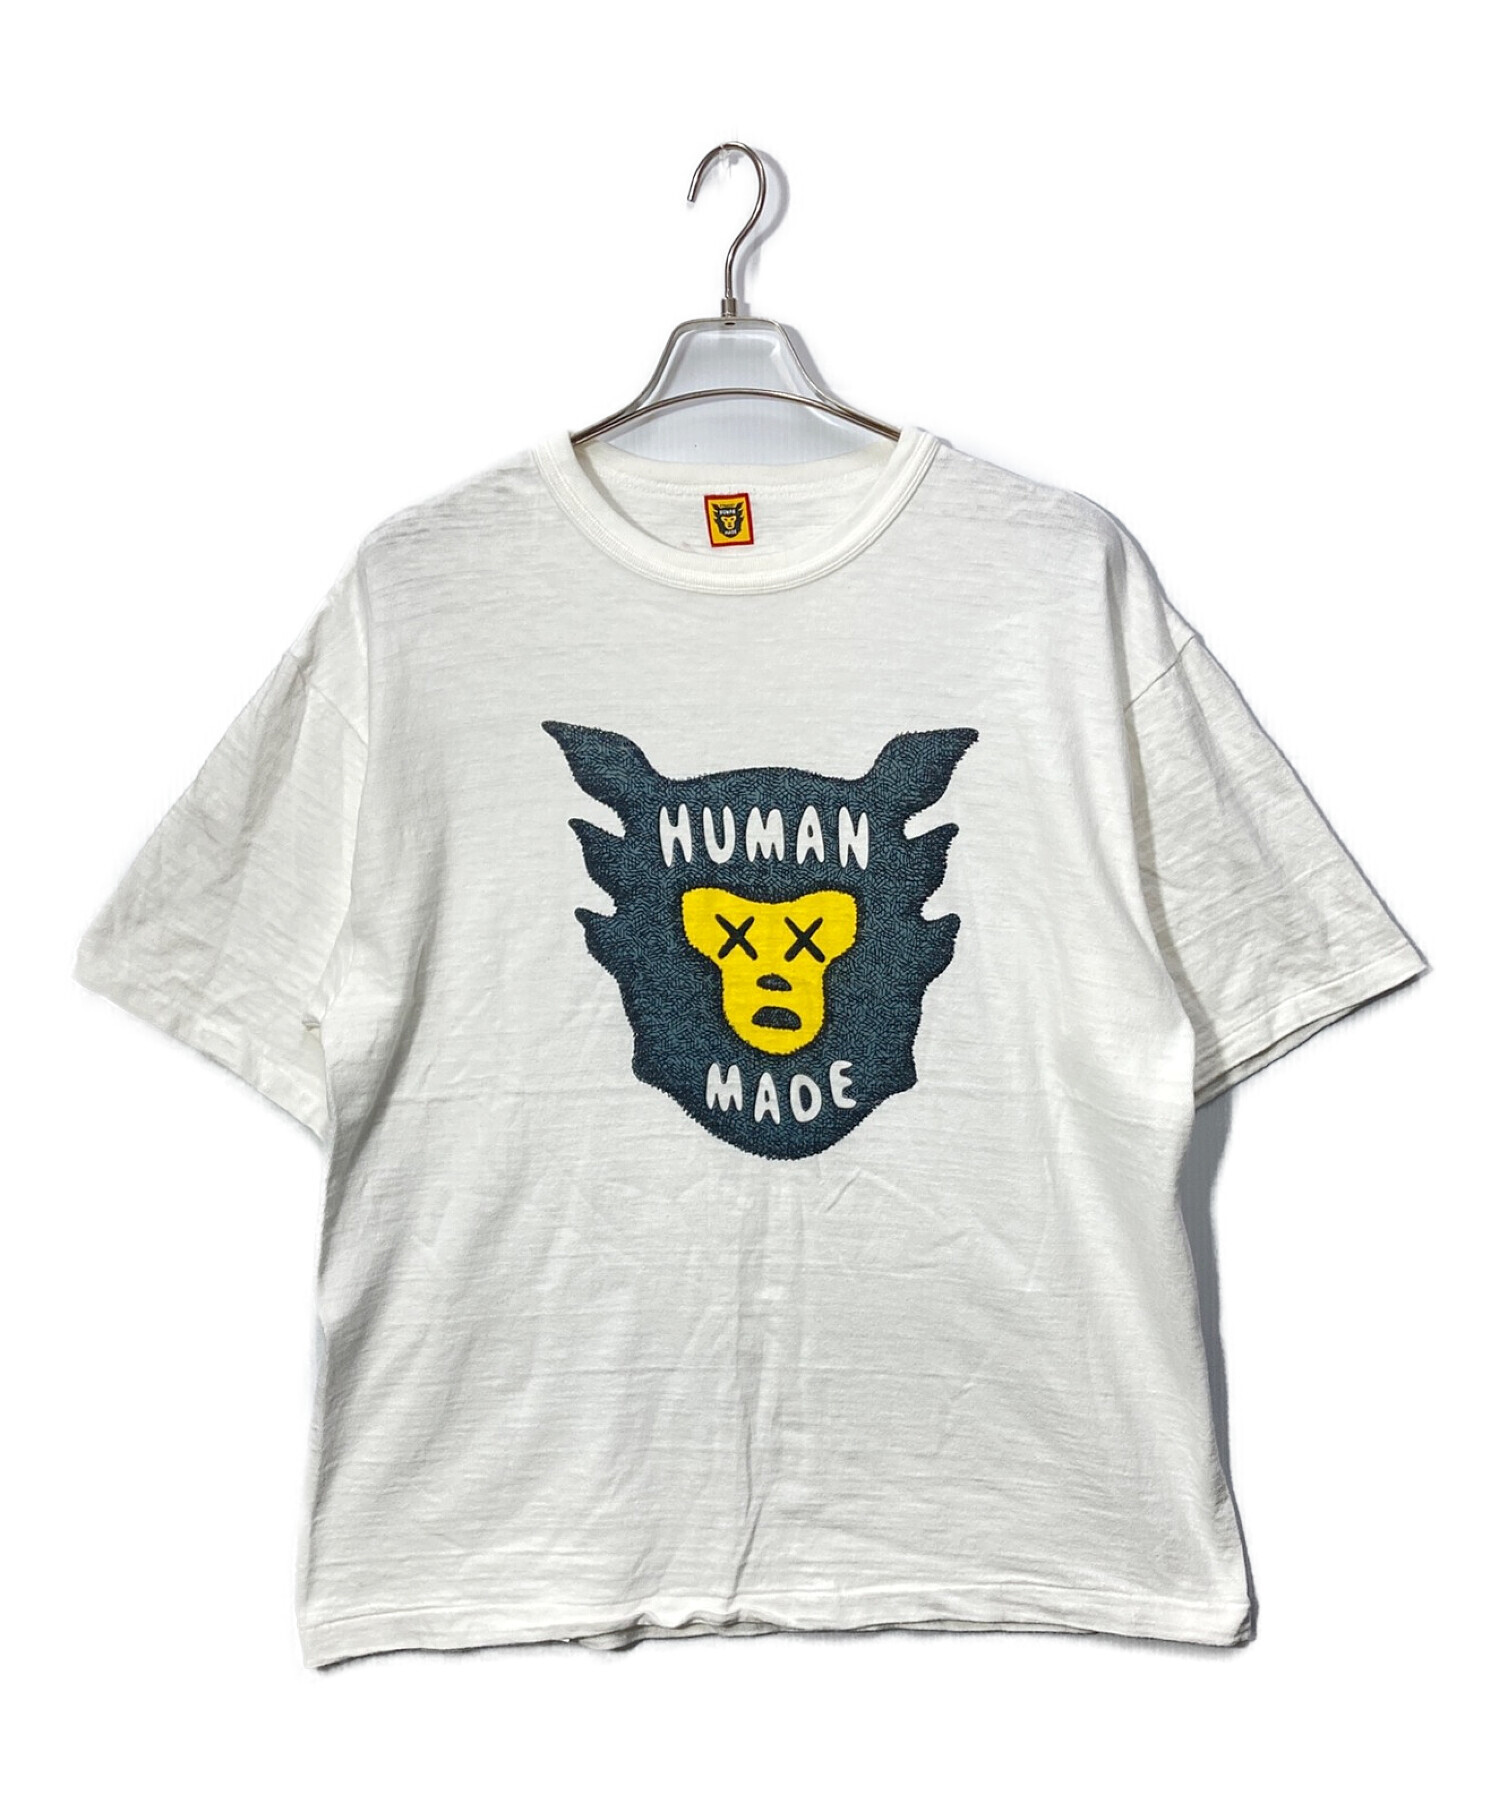 KAWSKAWS x HUMANMADE カウズメイド Tシャツ - Tシャツ/カットソー ...